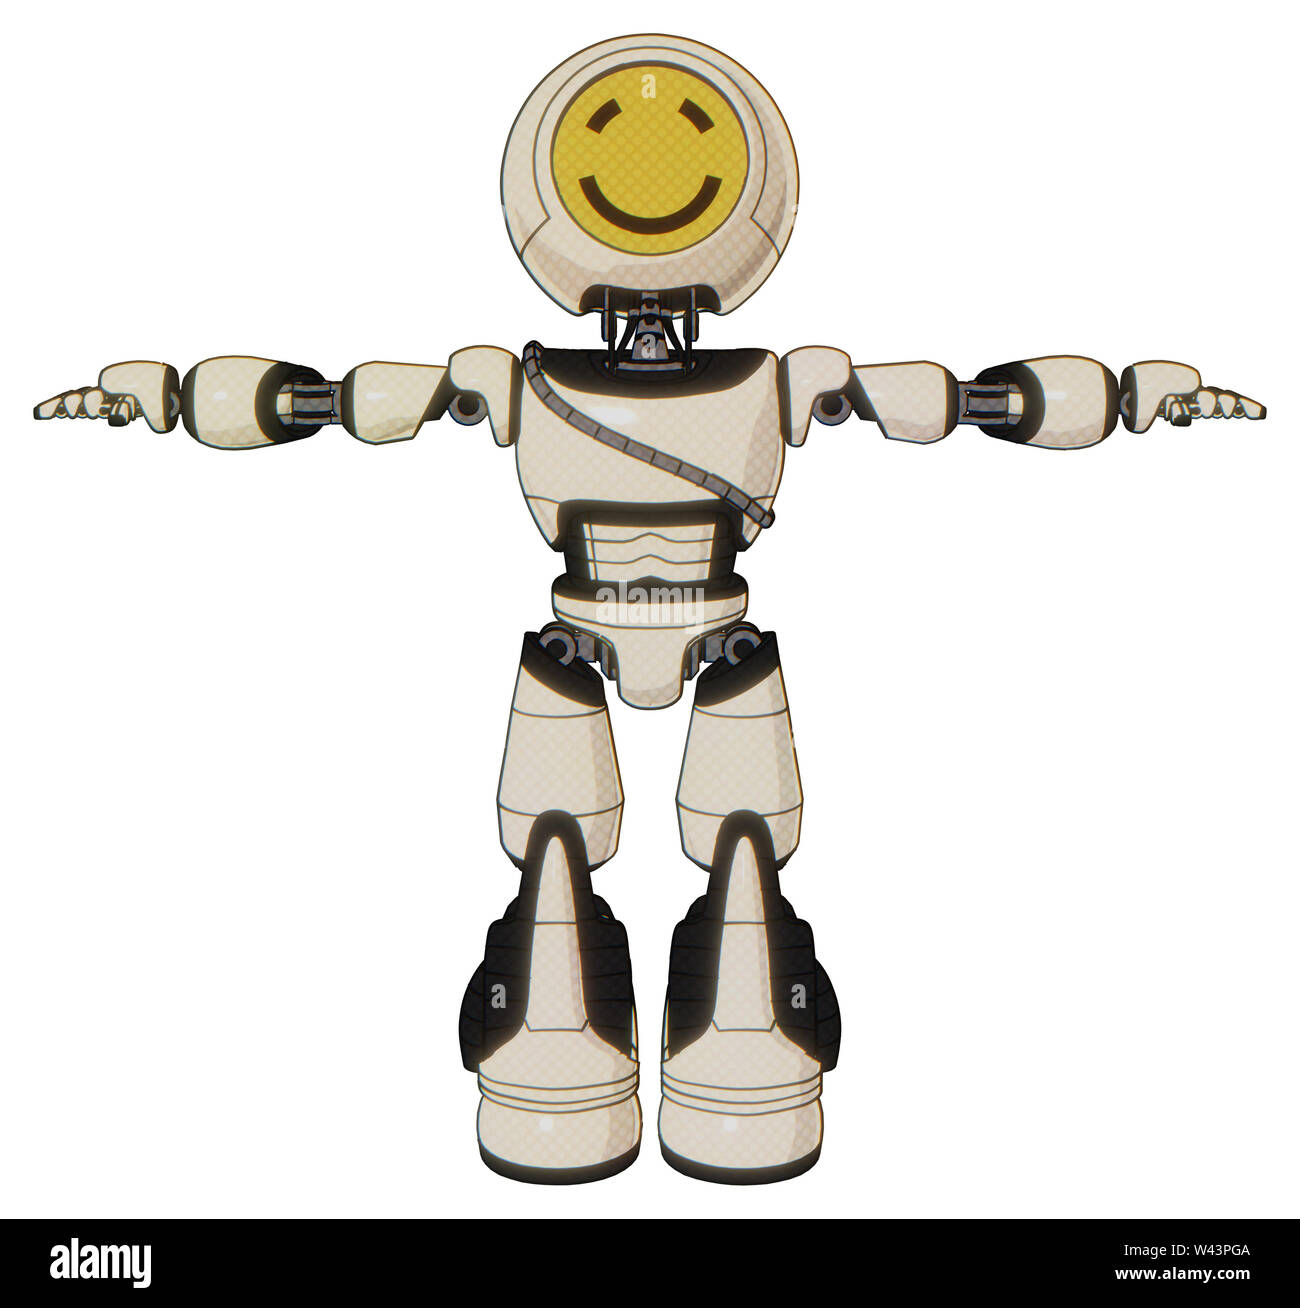 Roboter, die Elemente enthalten: Runder Kopf gelb glückliches Gesicht,  Brust exoshielding, Kabel-Schärpe, Licht Bein exoshielding, stomper Fuß  mod. Material Stockfotografie - Alamy